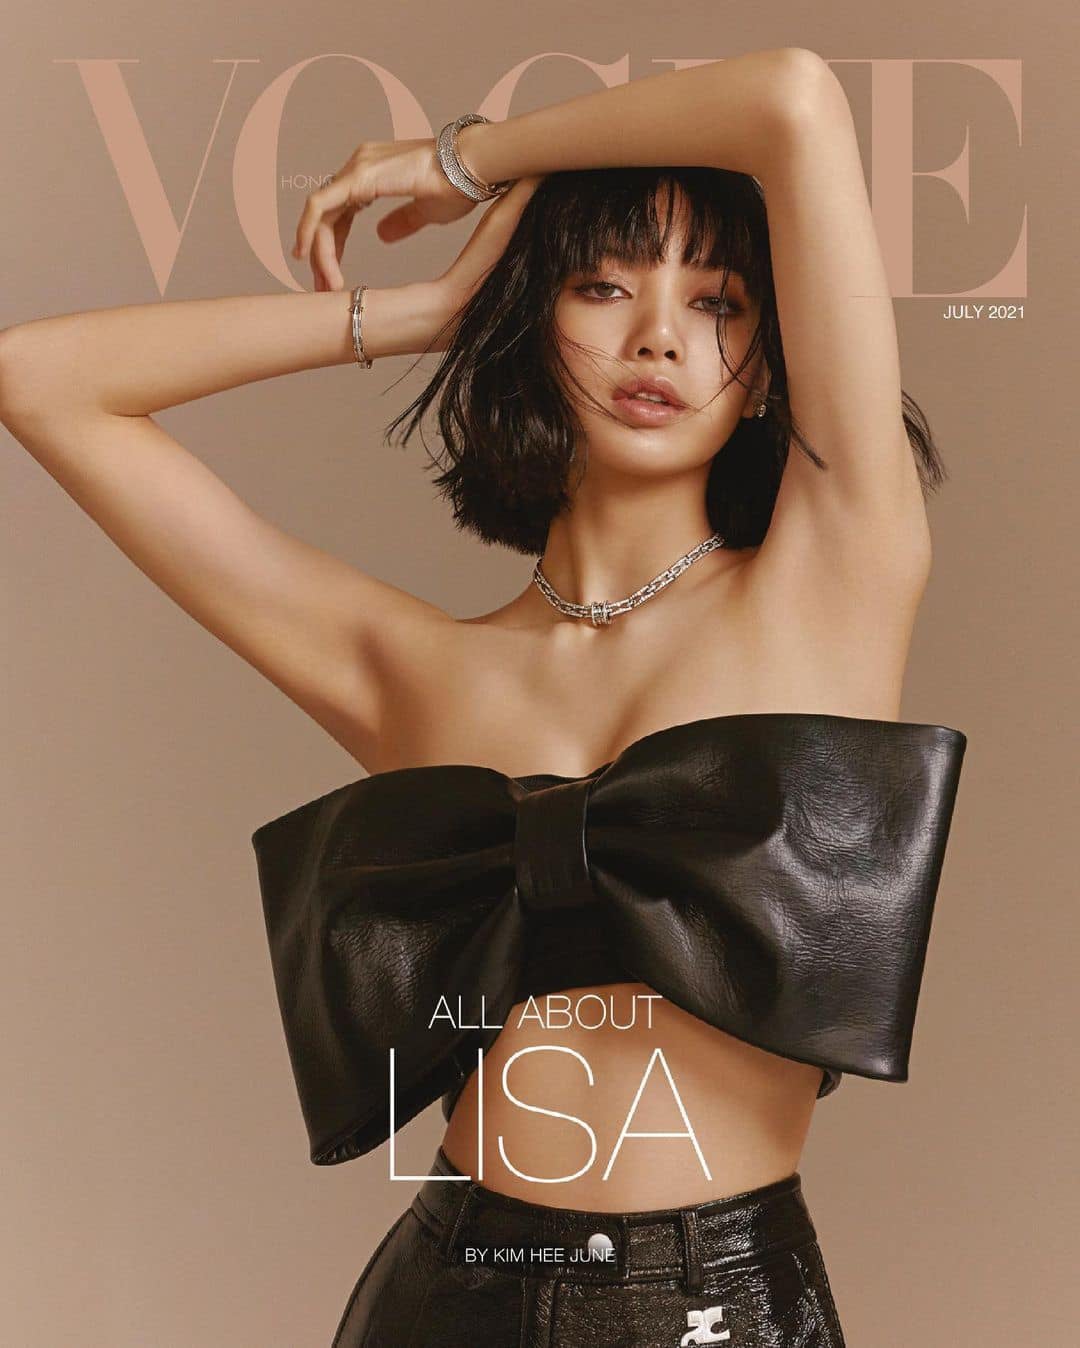 Mới đây, Lisa đã trở thành gương mặt trang bìa số tháng 7 của Vogue Hồng Kông. Dân tình chẳng khỏi xịt máu mũi với hình ảnh người đẹp diện chiếc croptop khoe vòng 1 và vòng 2 hấp dẫn.